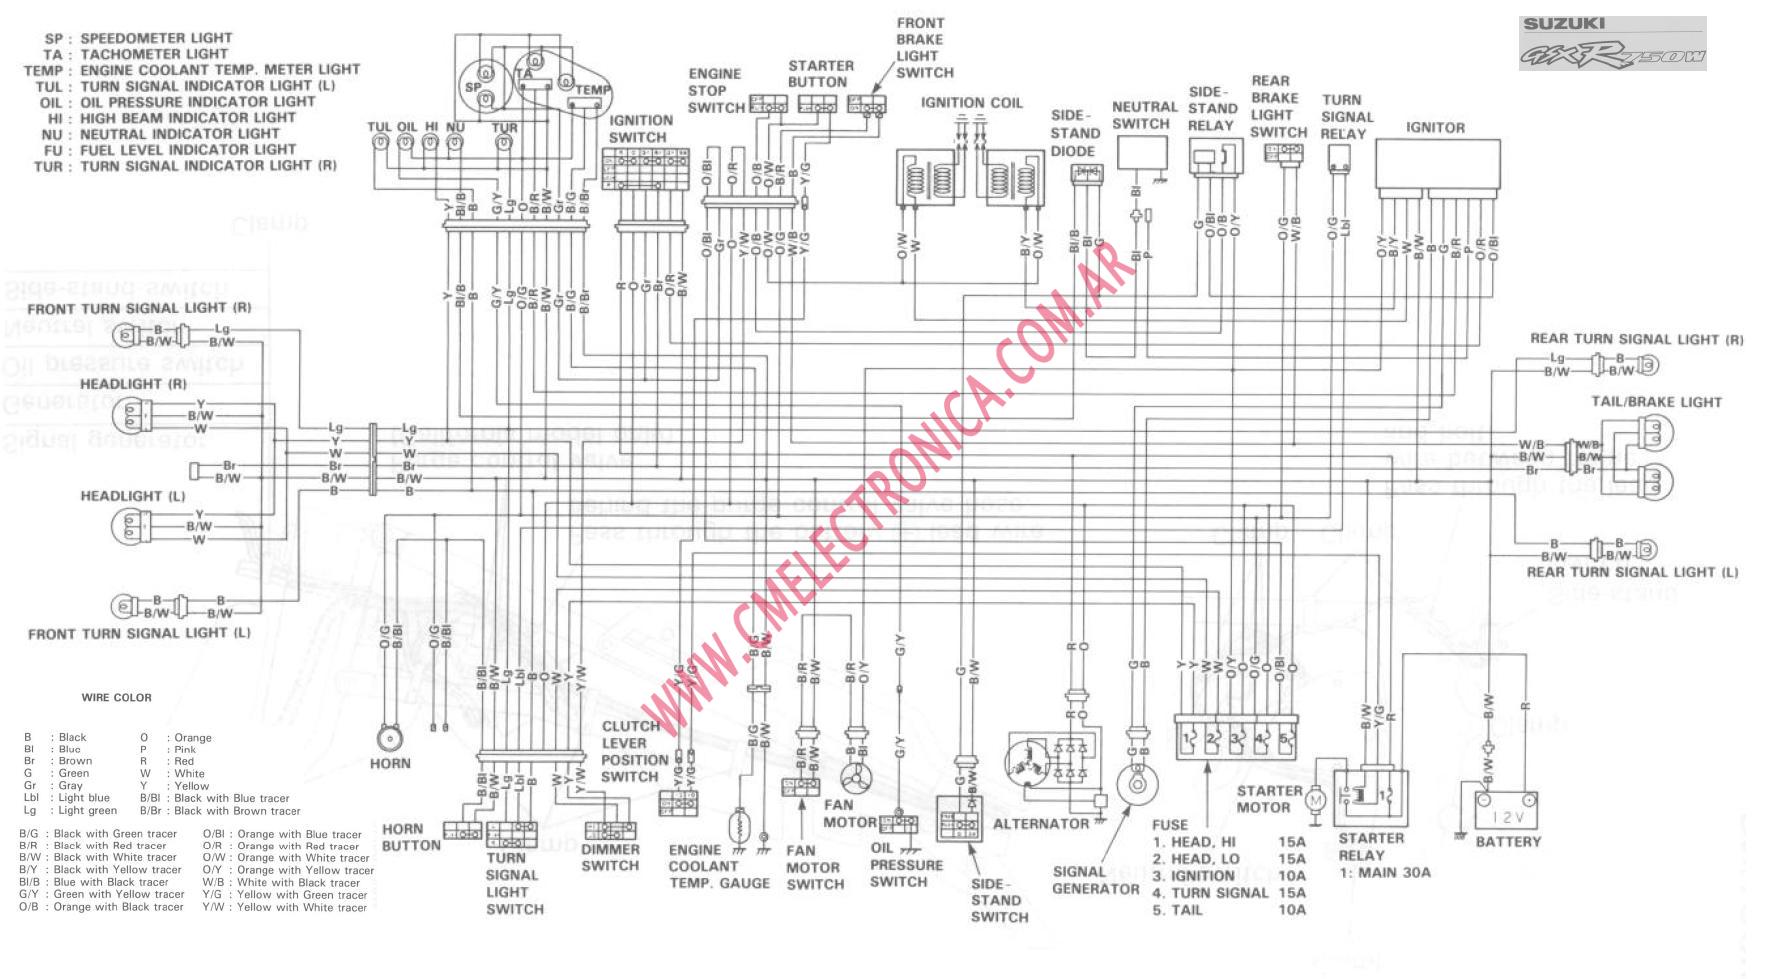 Wiring Diagram PDF: 2002 Suzuki Gsxr 1000 Wiring Diagram